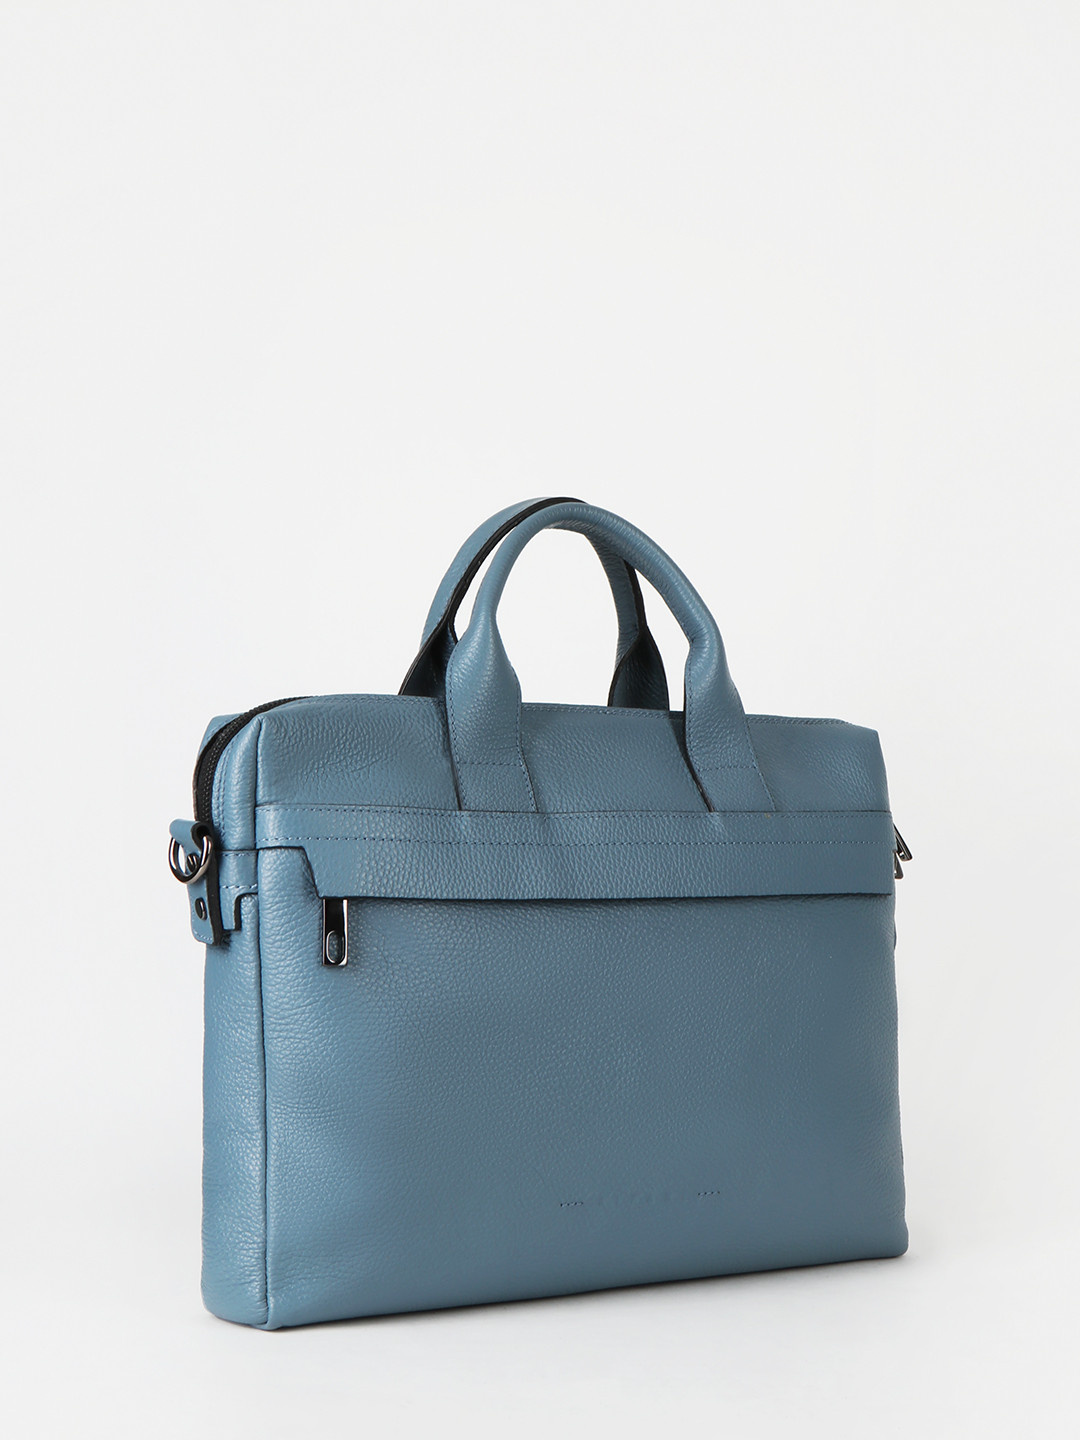 Фото Деловая сумка из зернистой кожи голубого цвета Деловые сумки